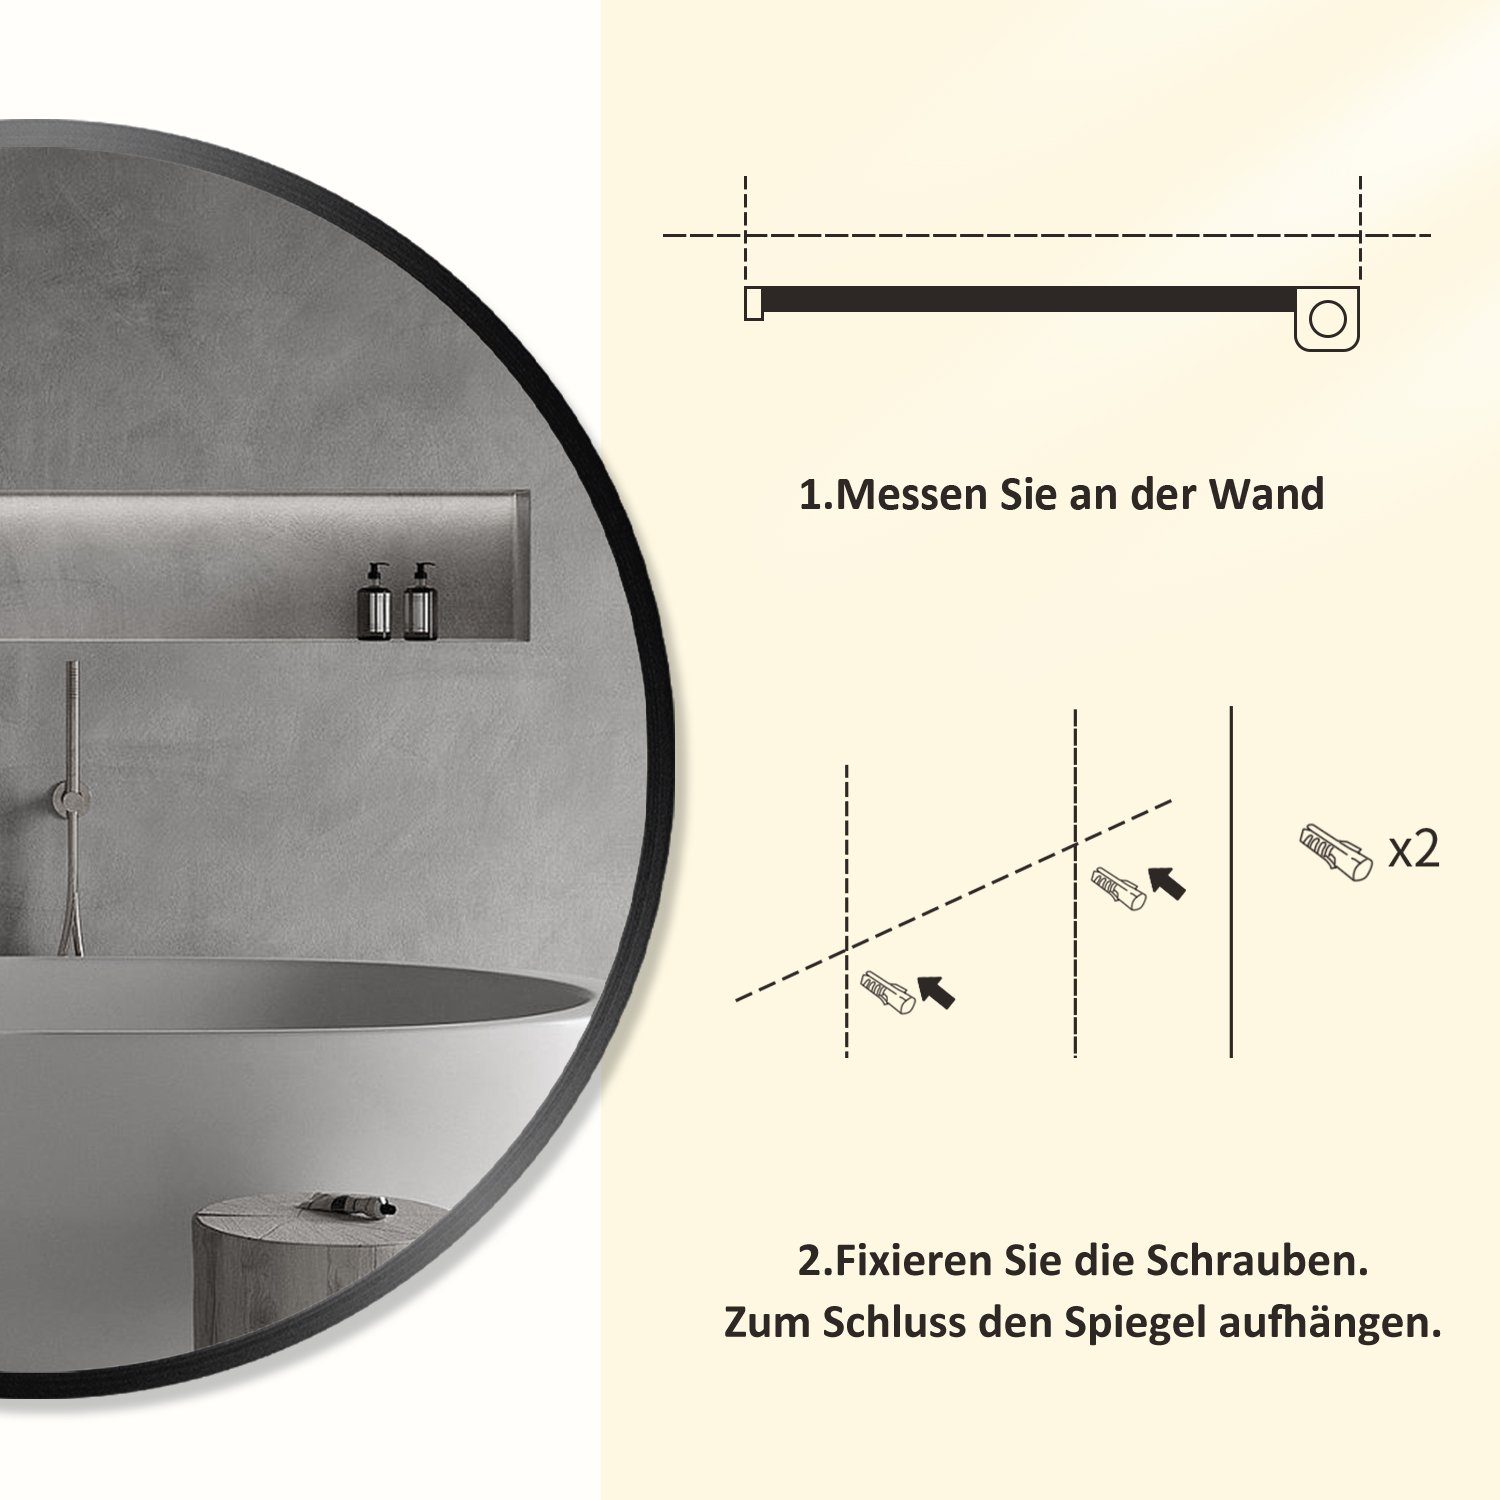 Boromal Metall Rund Schwarz Badspiegel Dekospiegel Rahmen), Spiegel (Badezimmerspiegel,Flurspiegel,Kosmetikspiegel,Schminkspiegel, Wandspiegel spiegel HD Ø40/50/60/70/80cm 5mm